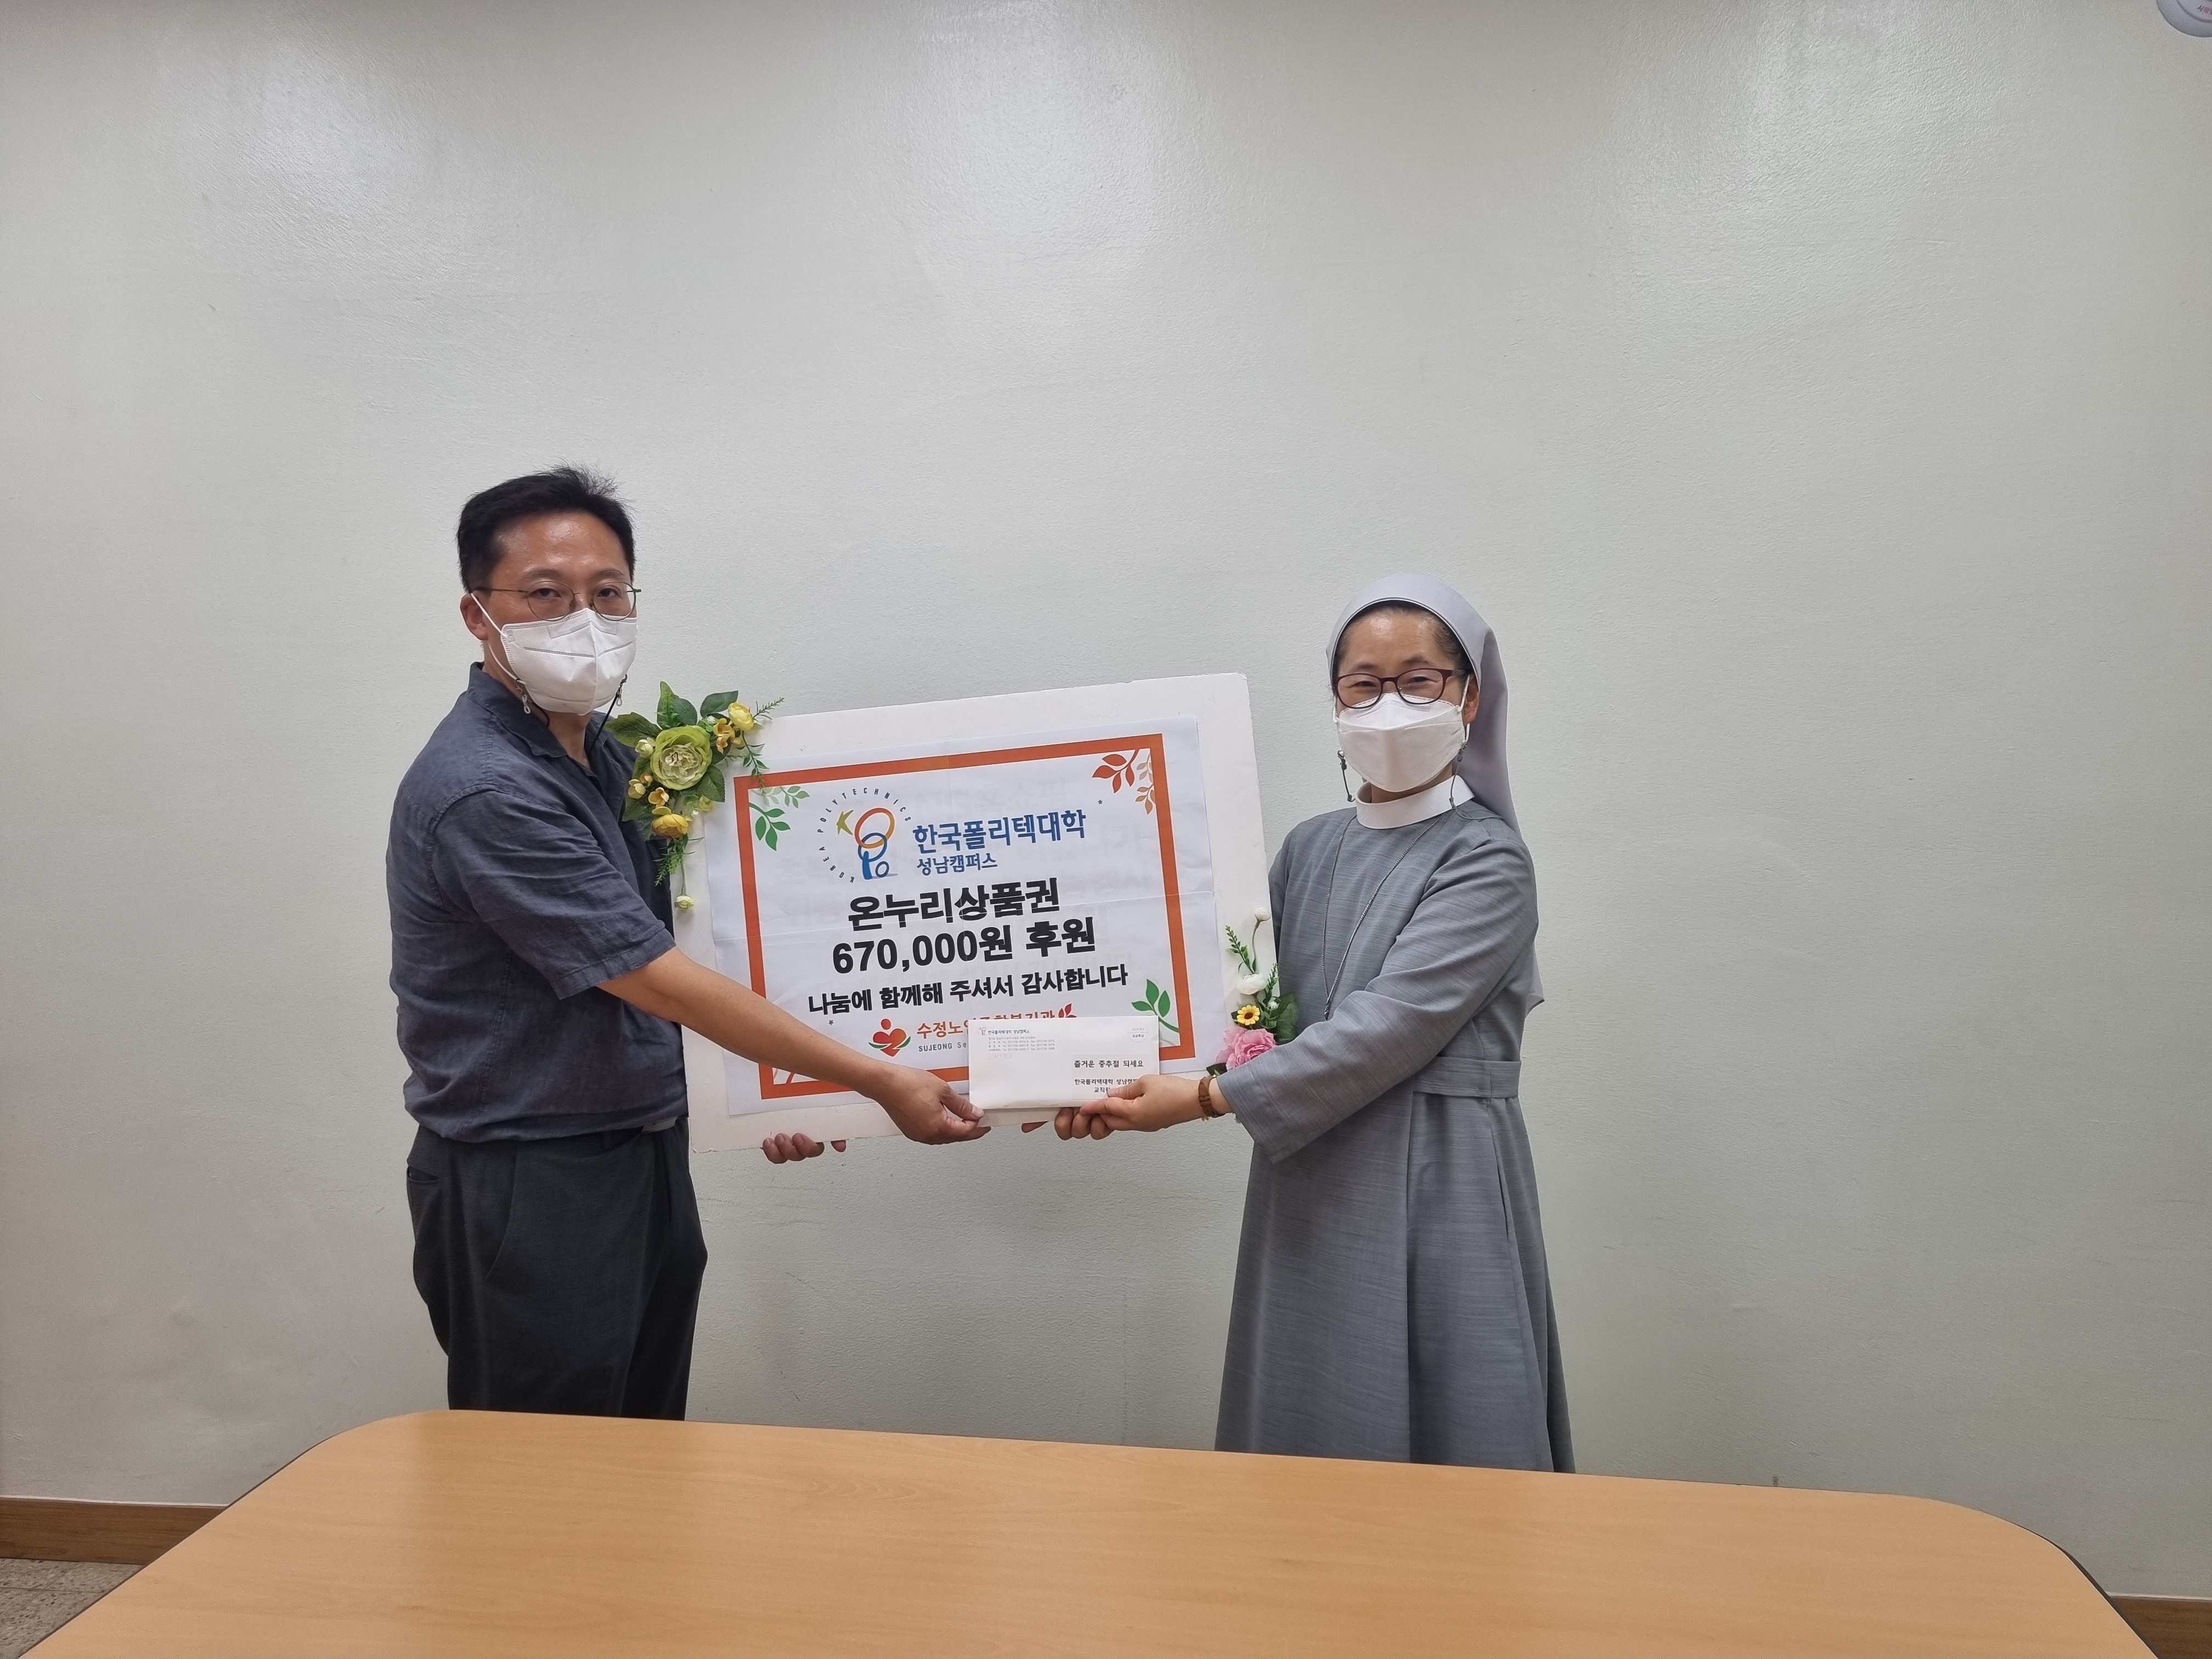 한국폴리텍대학 성남캠퍼스에서 온누리상품권 670,000원을 후원해 주셨습니다!